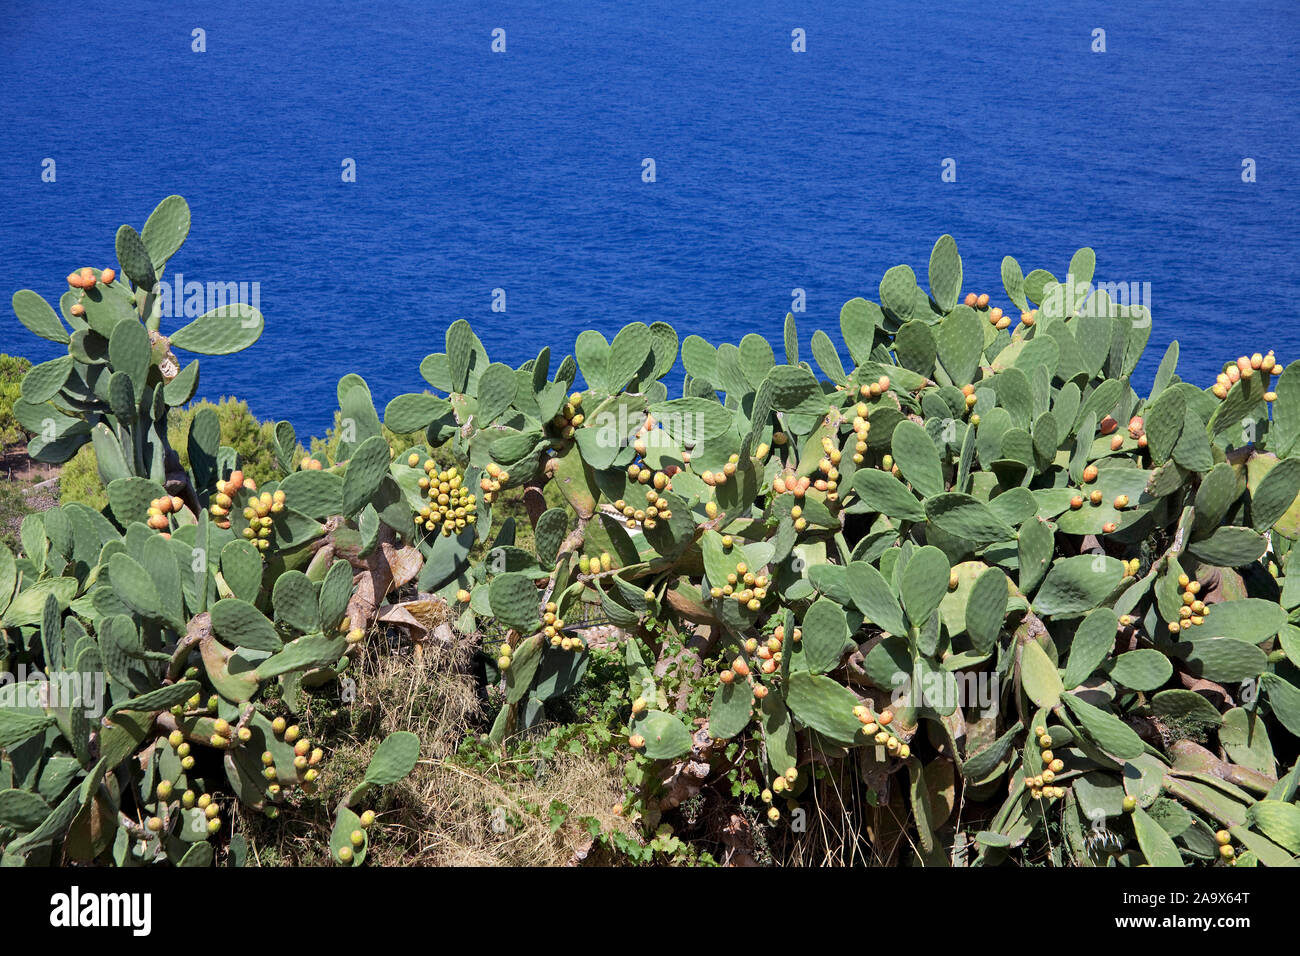 Las tunas (Opuntia ficus-indica), Banyalbufar, Mallorca, Islas Baleares, España Foto de stock